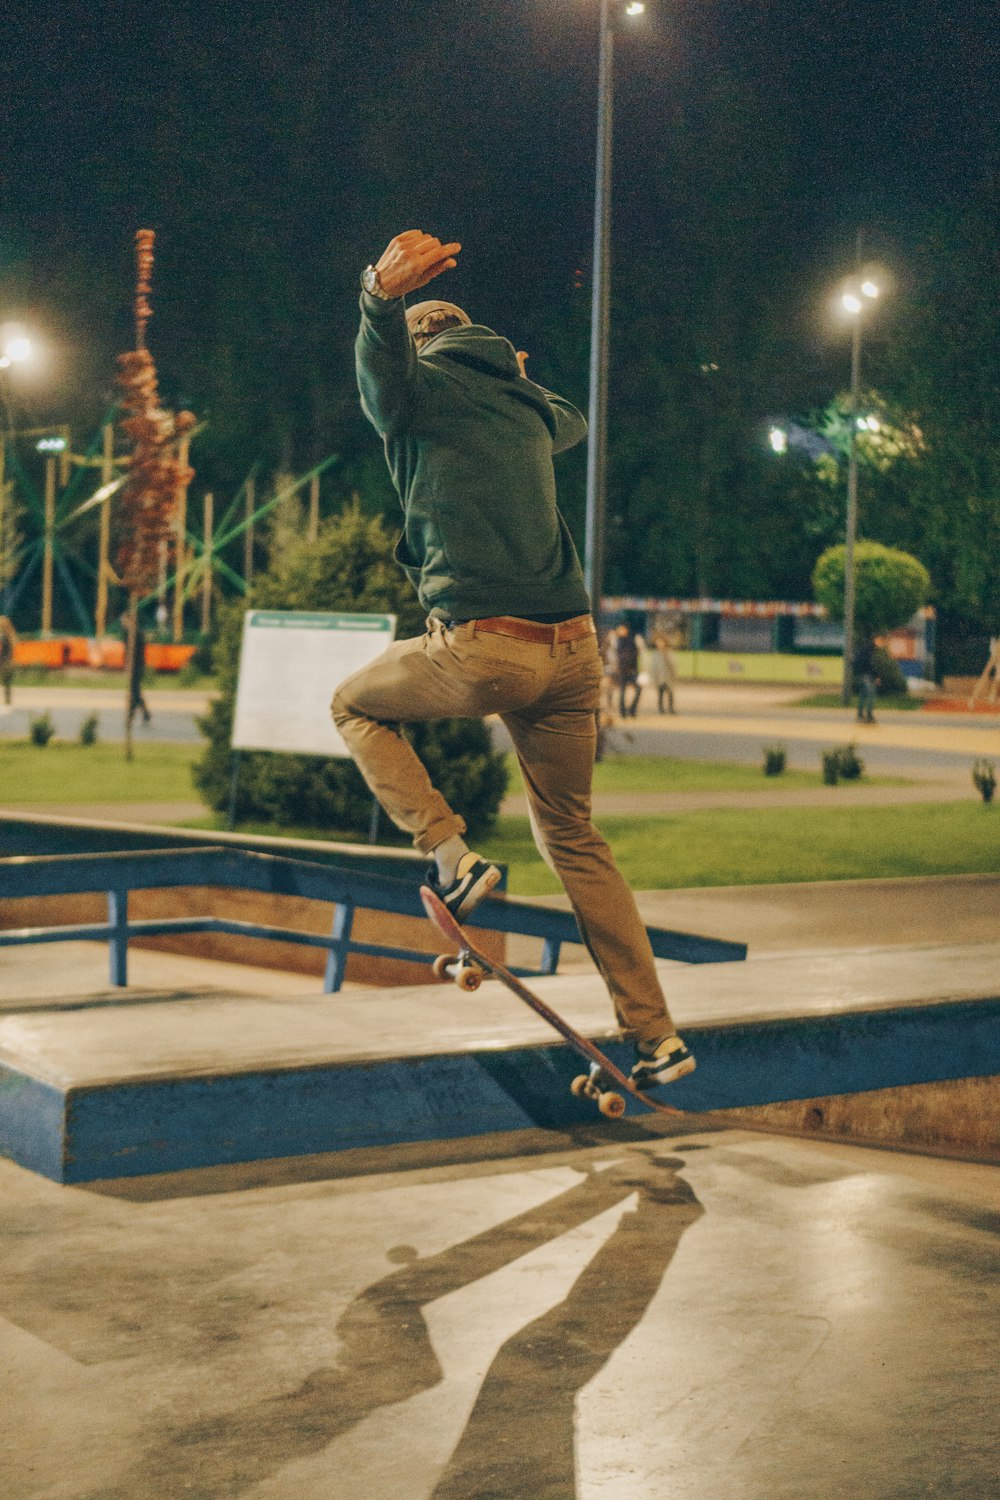 skateboarder in park